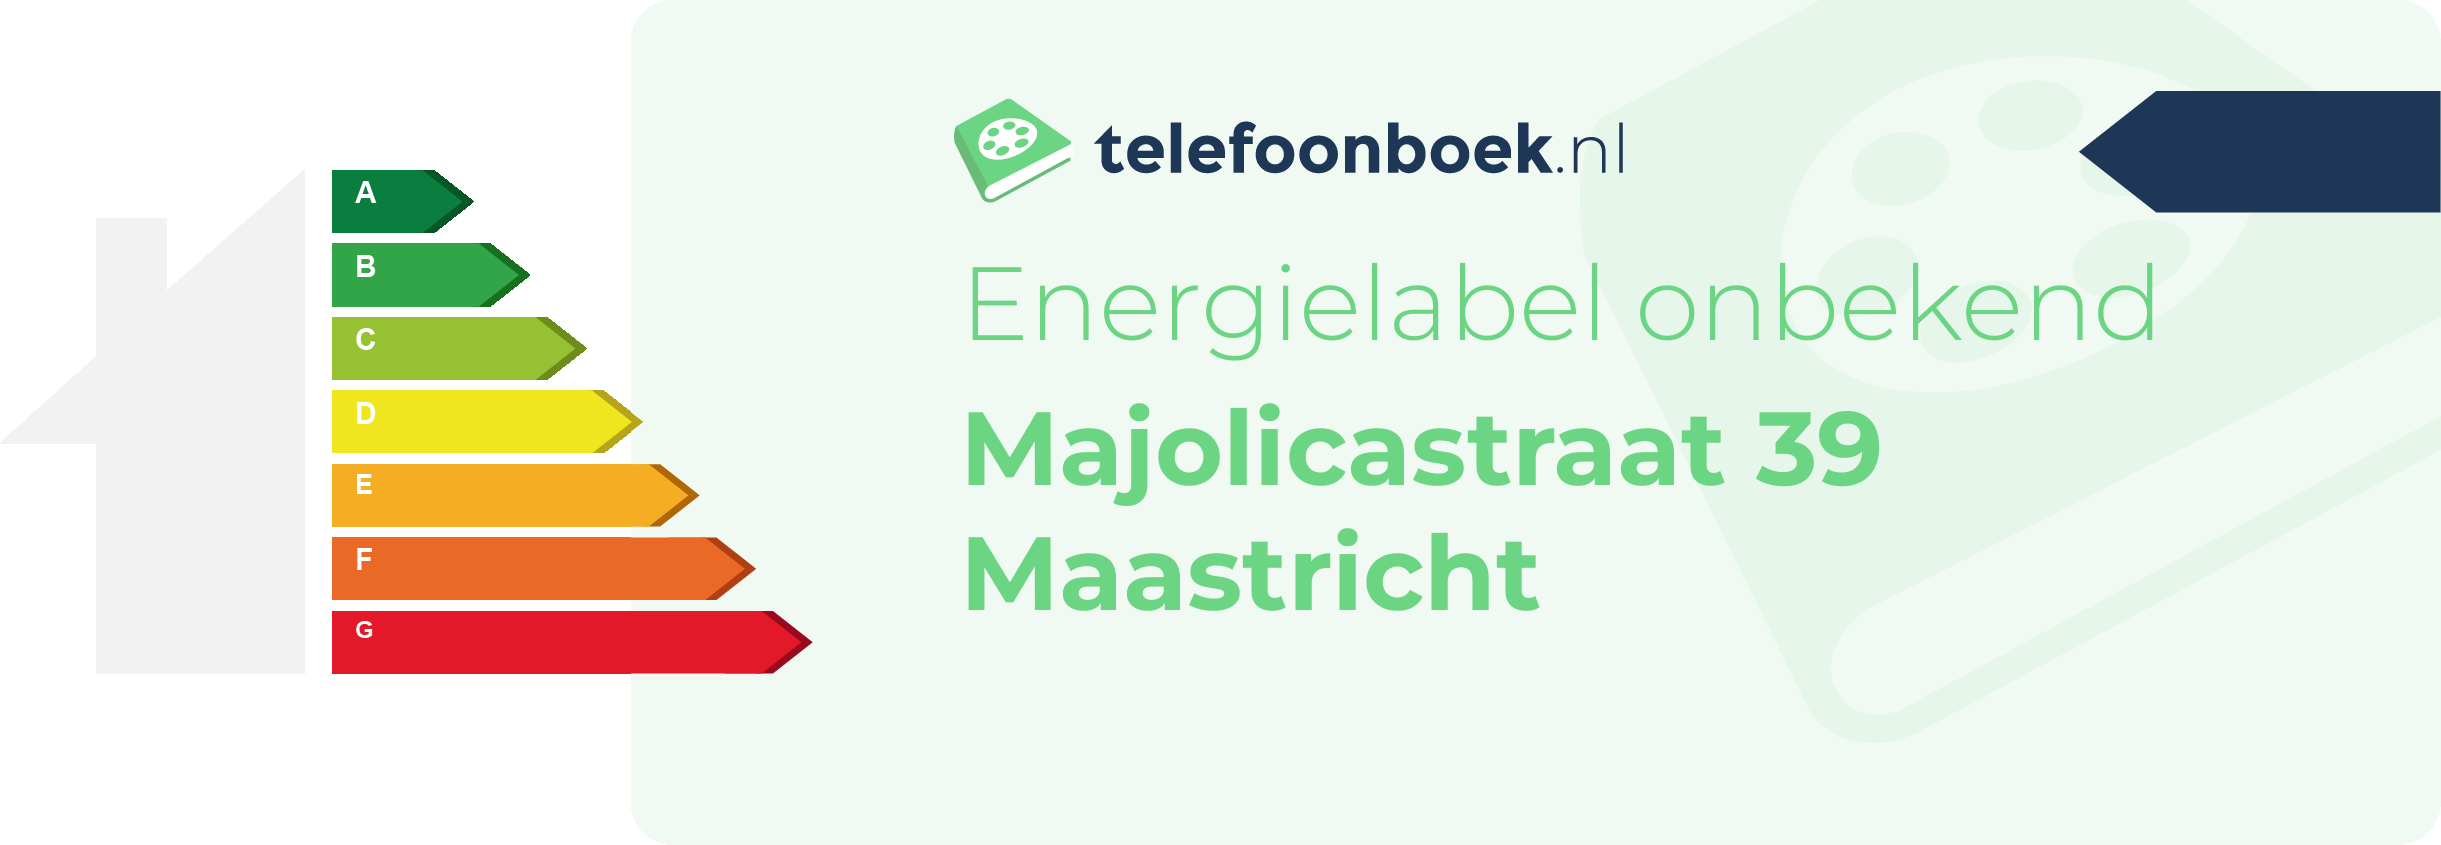 Energielabel Majolicastraat 39 Maastricht